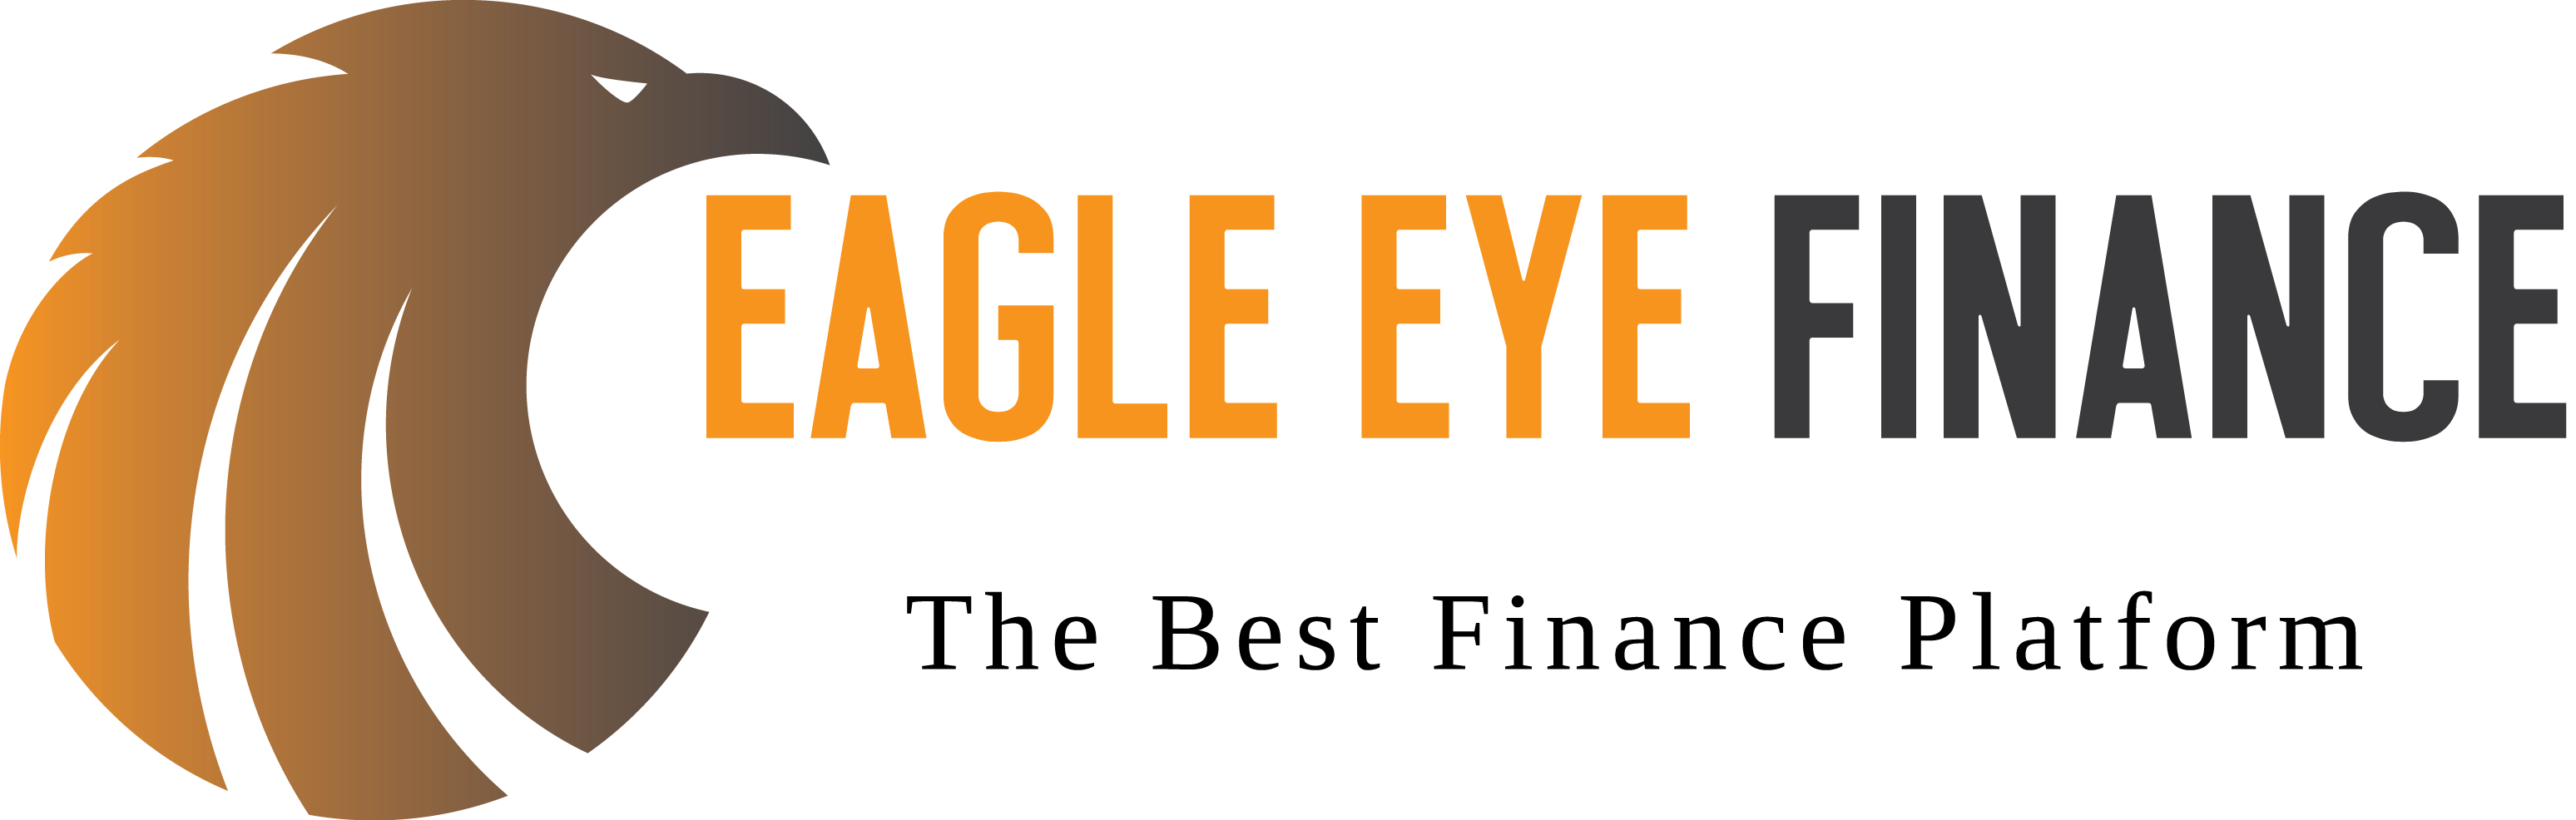 Eagle Eye Finance